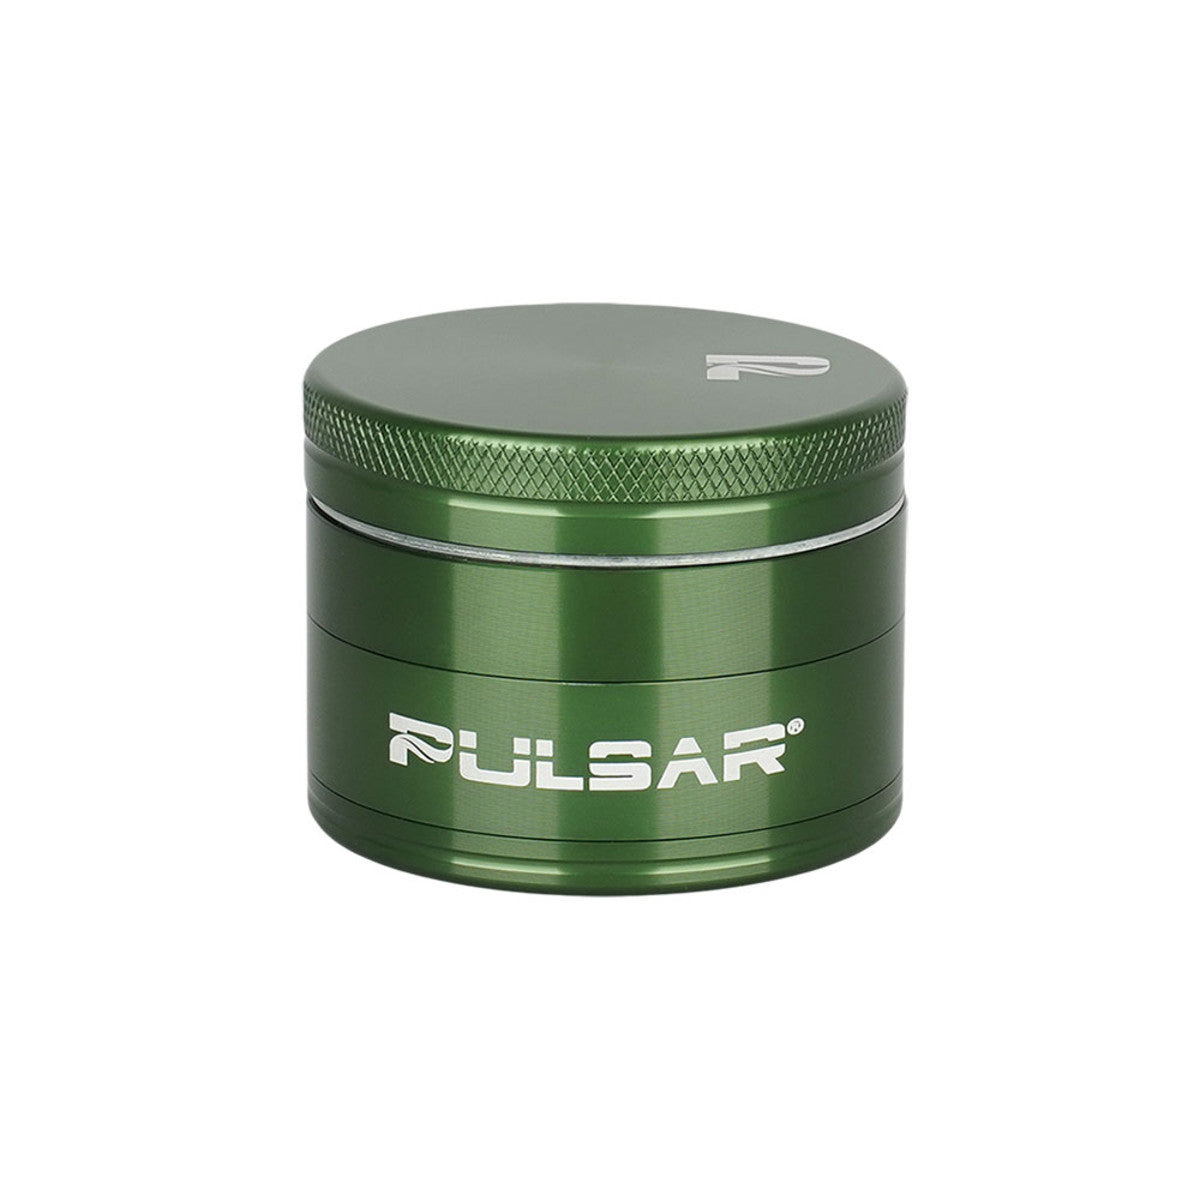 Pulsar Solid Top Aluminum Grinder - 4pc / 2" GR762